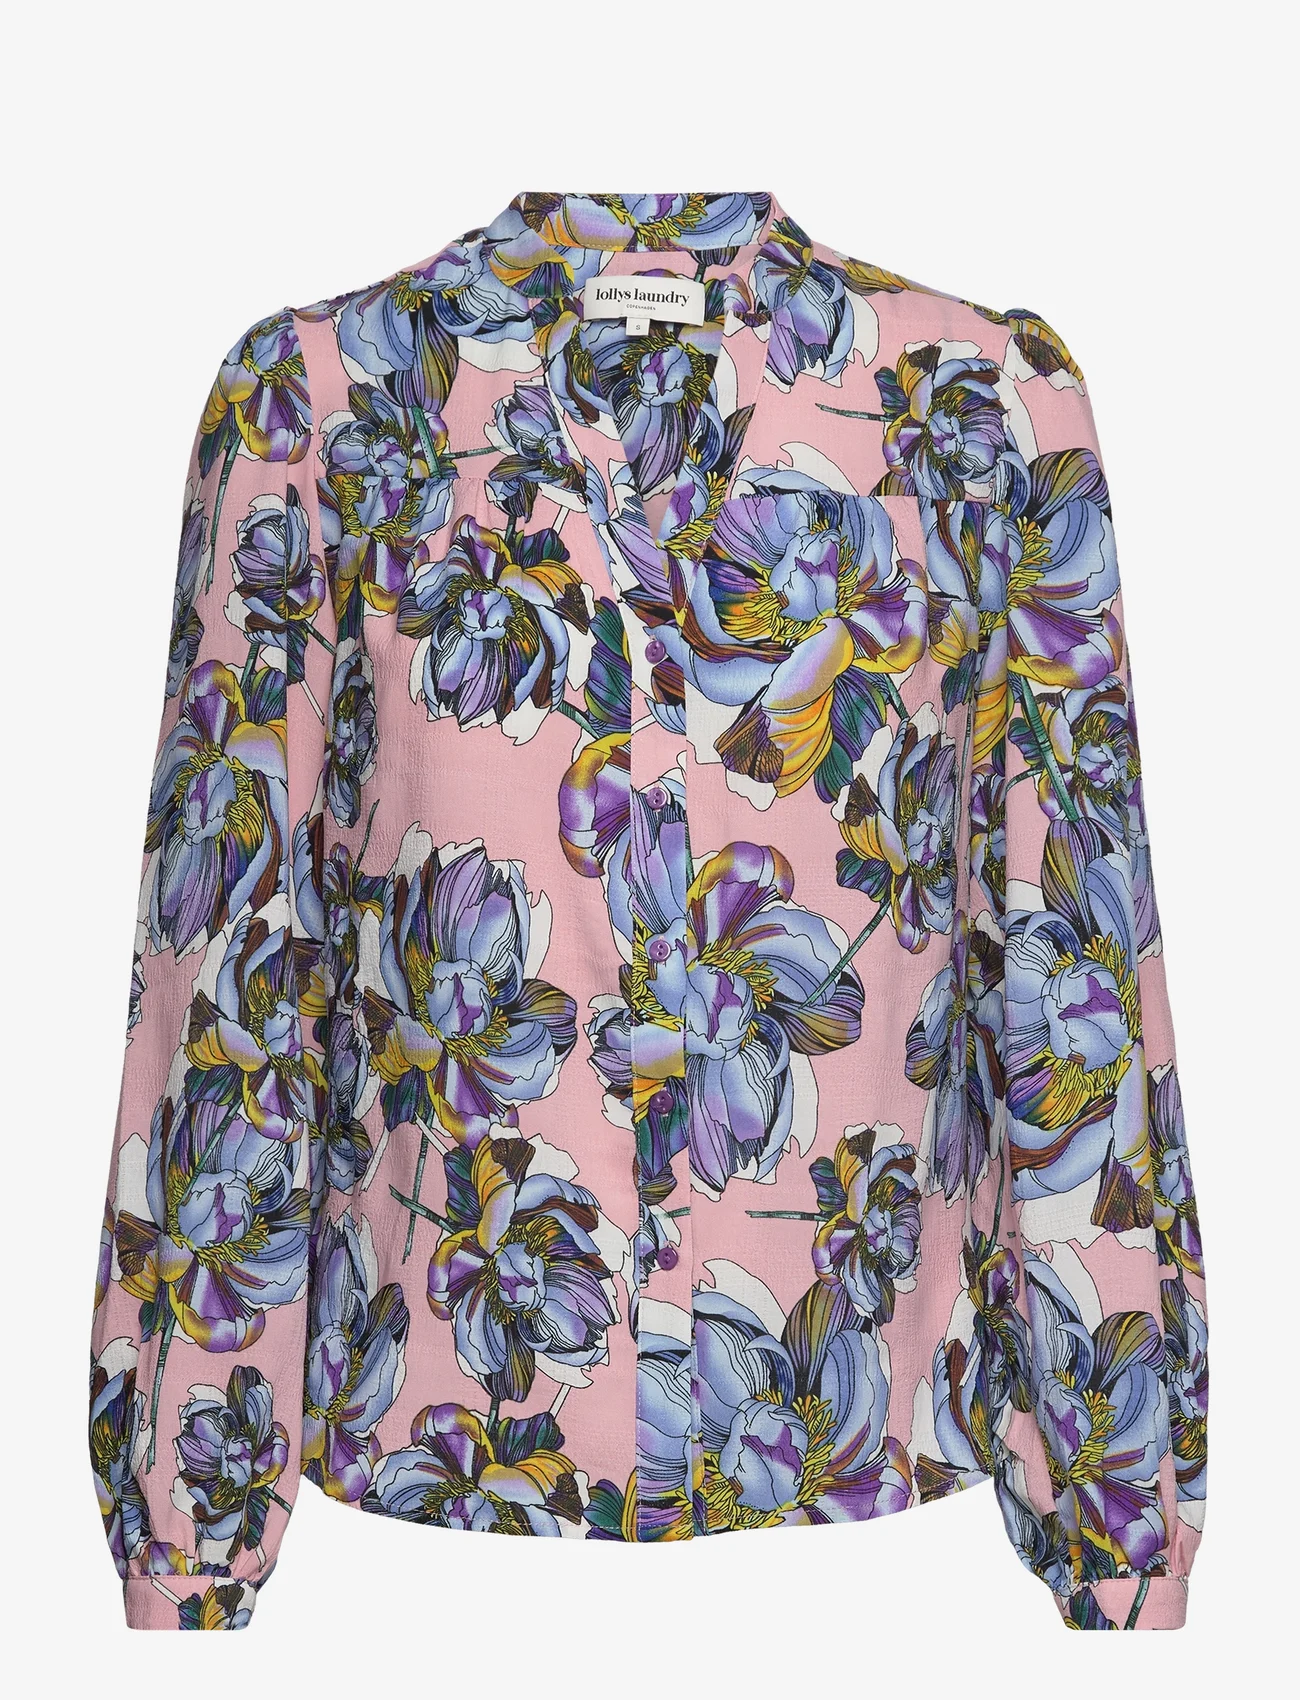 Lollys Laundry - Elif Shirt - langærmede skjorter - 74 flower print - 0